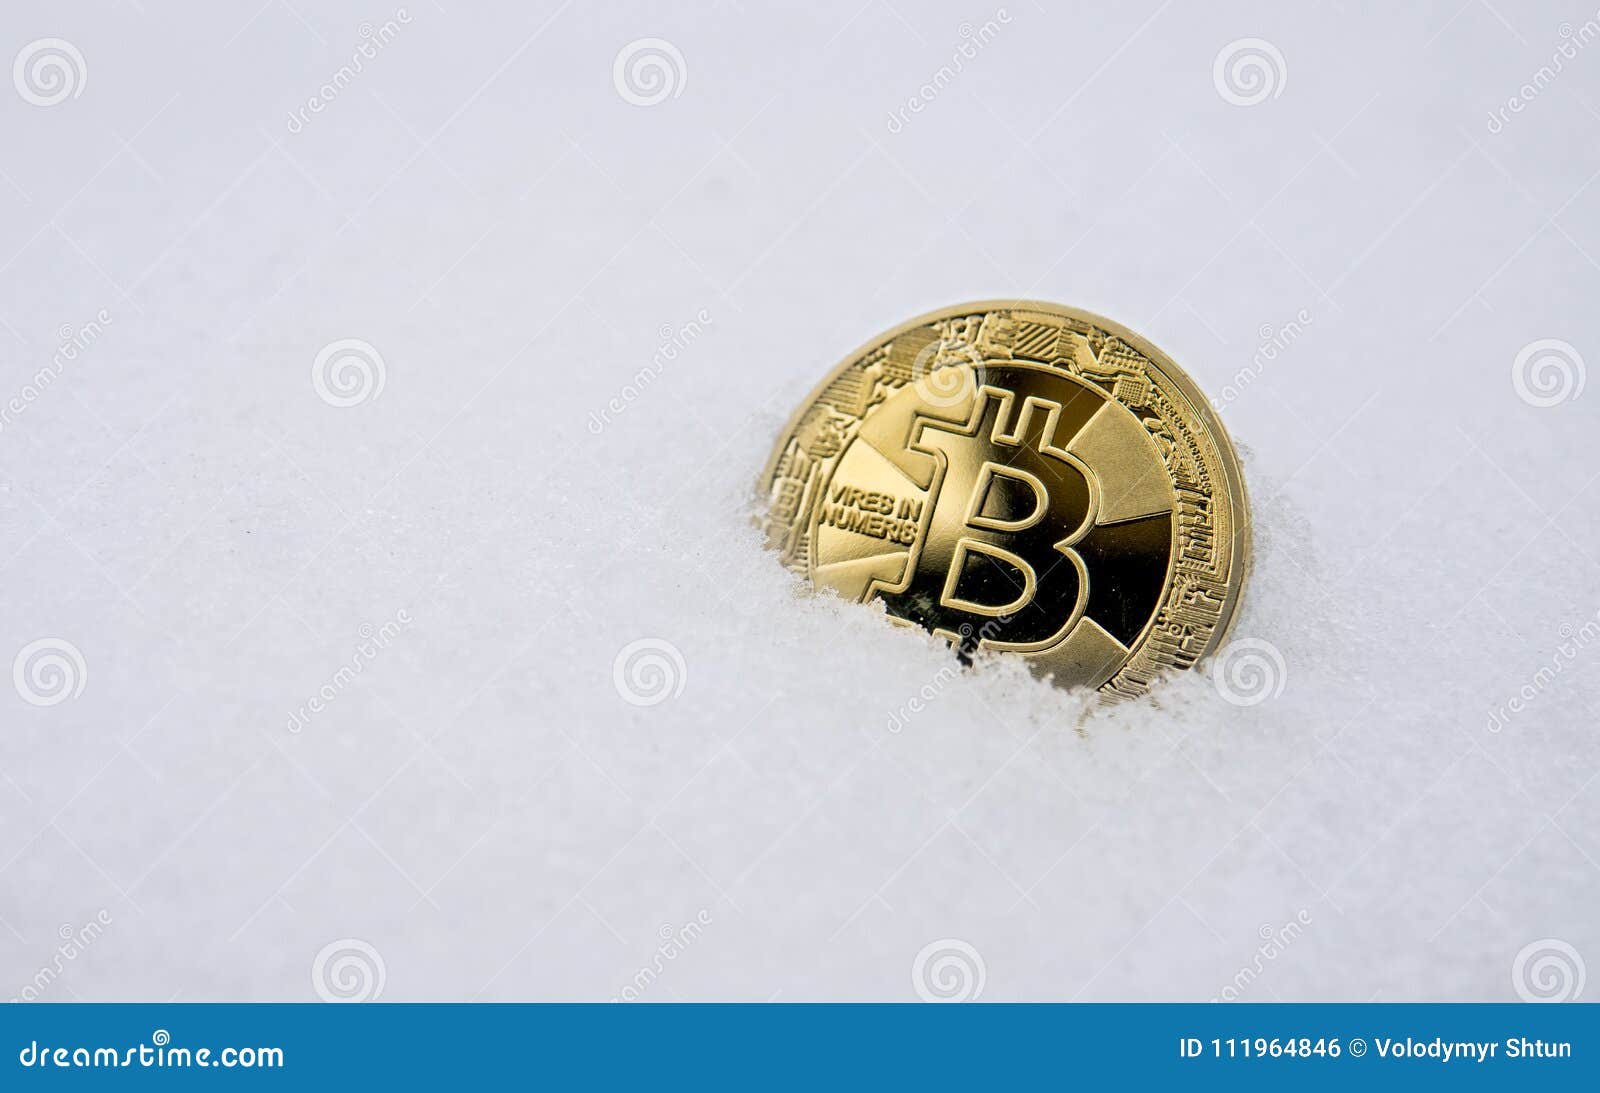 bitcoin trading frozen